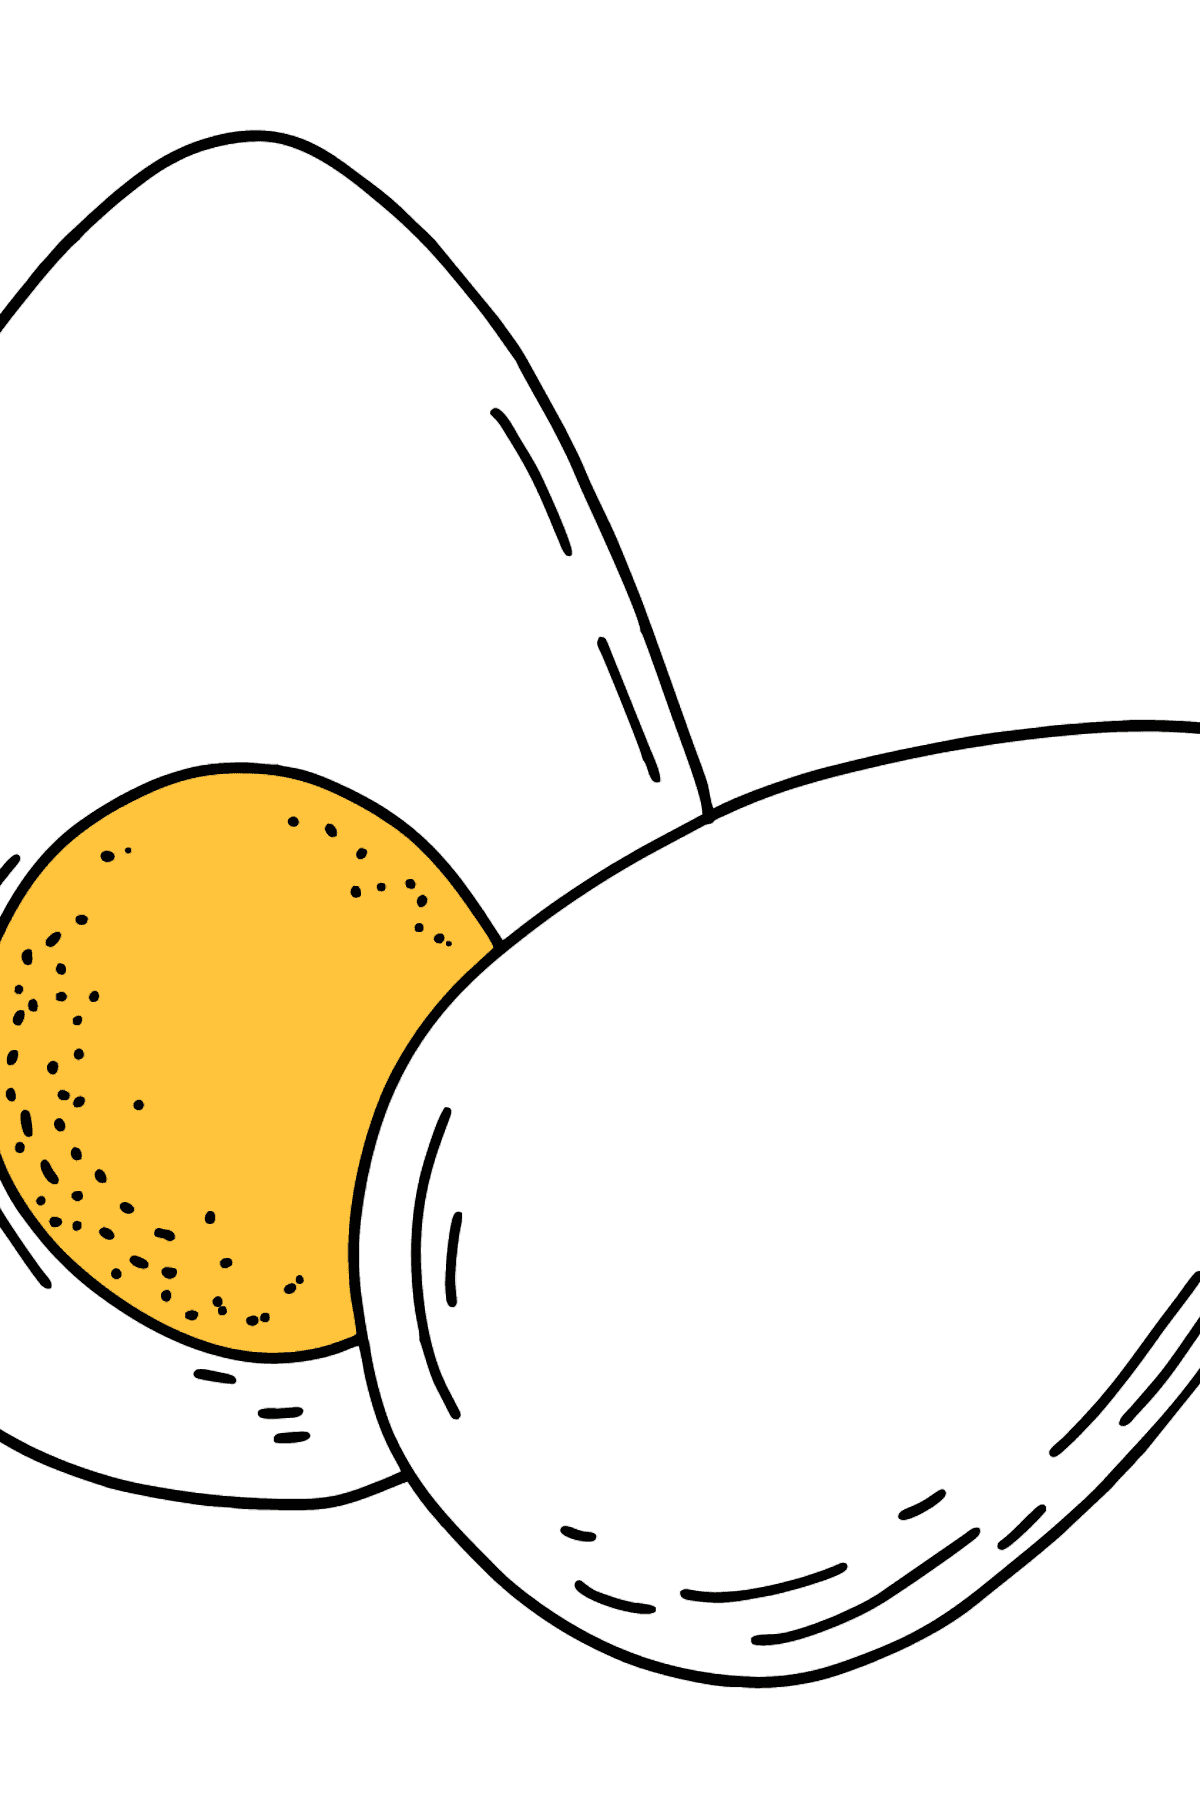 Dibujo de Huevos duros para colorear - Dibujos para Colorear para Niños